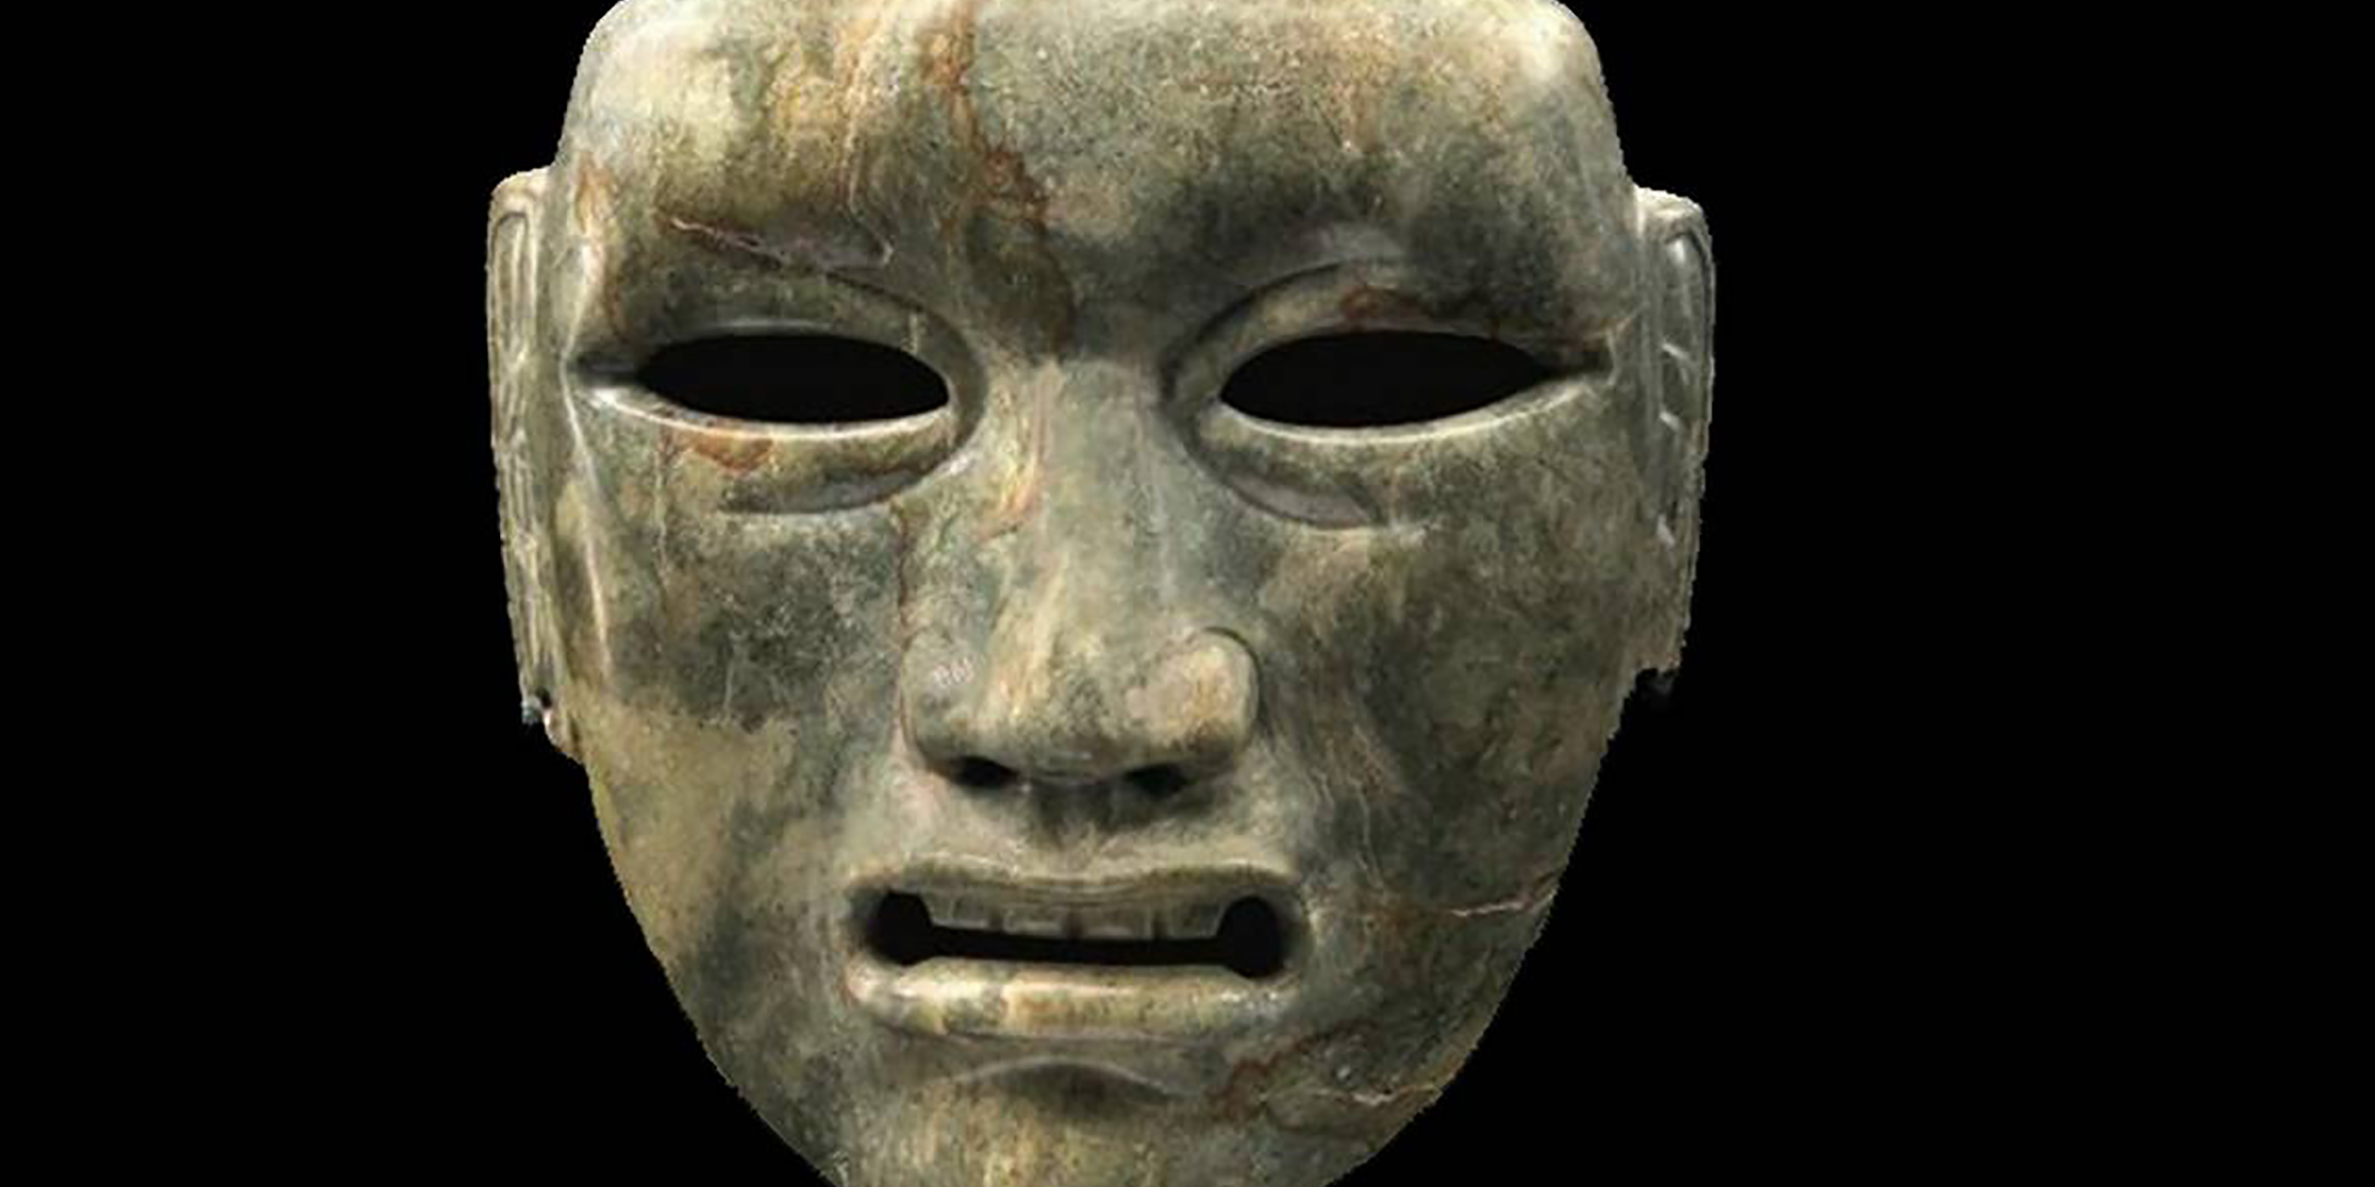 Llegan piezas arqueológicas repatriadas de Estados Unidos | El Imparcial de Oaxaca